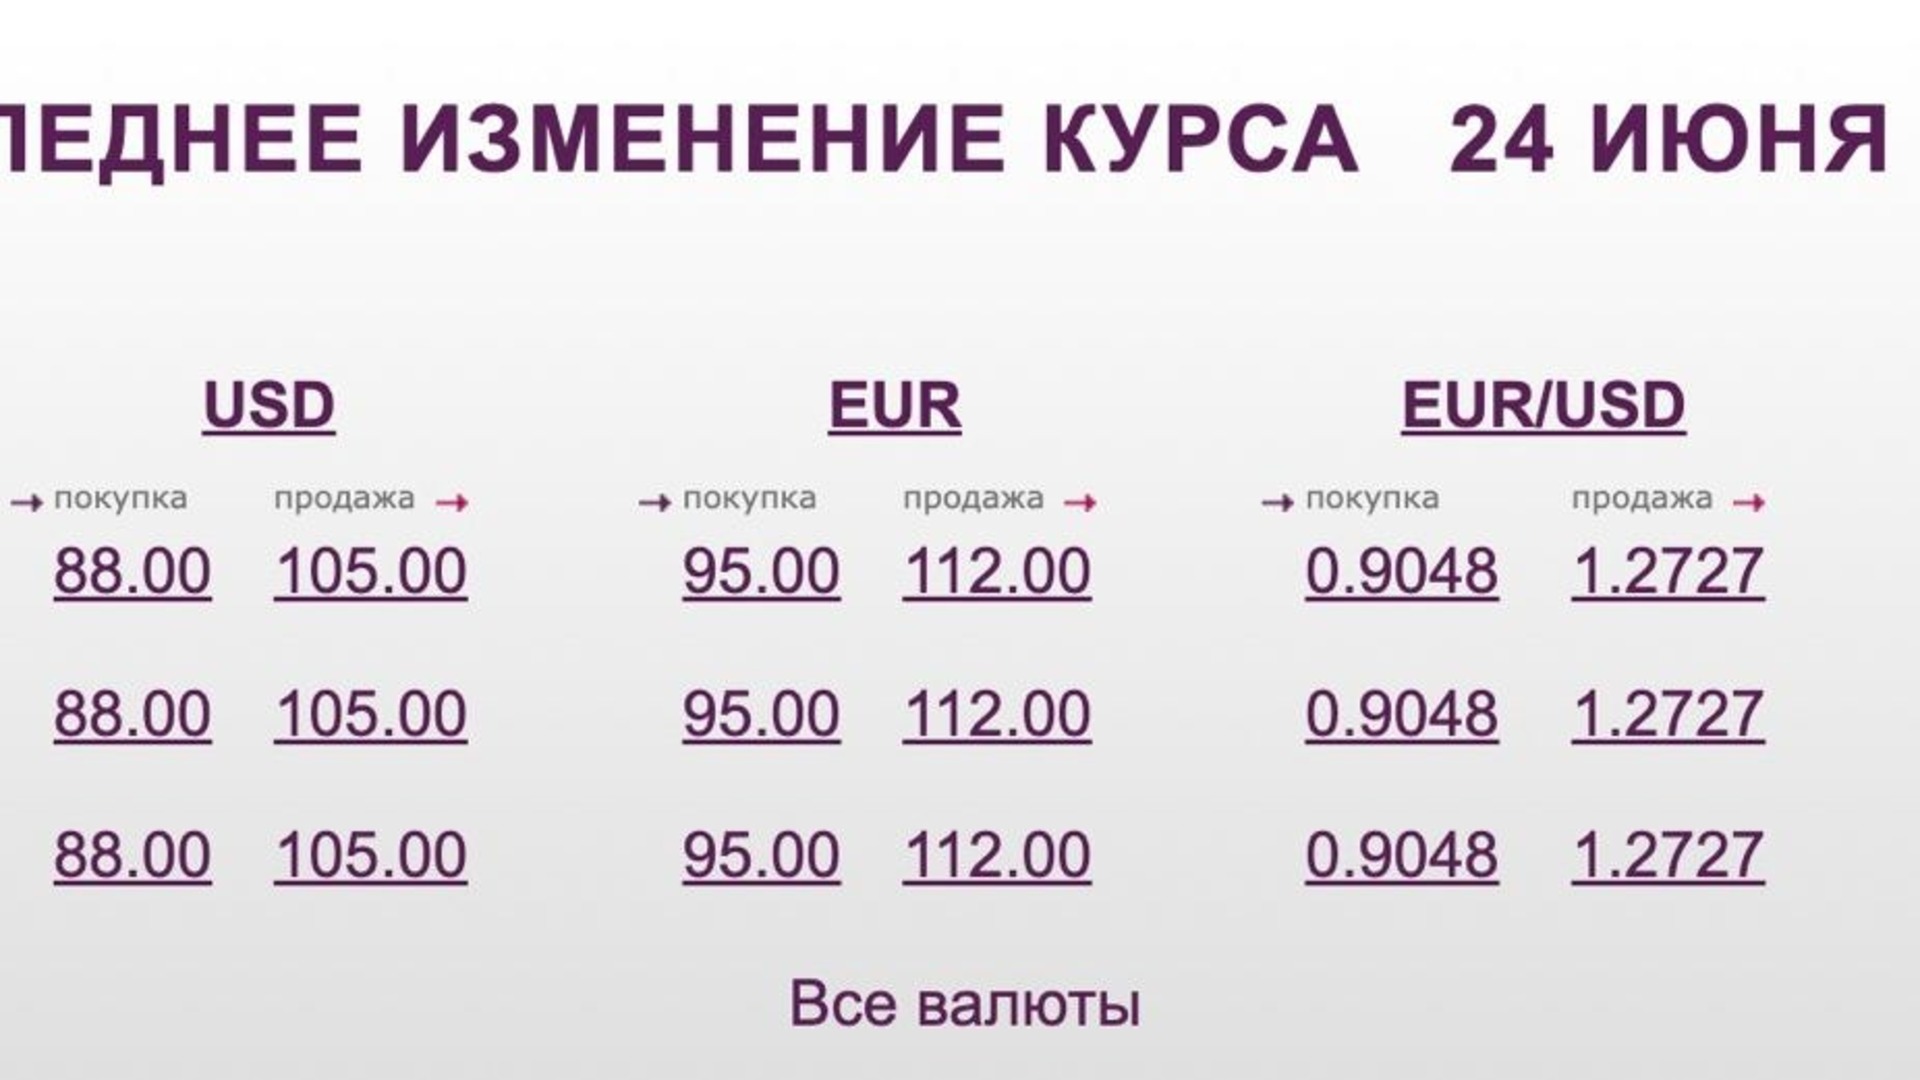 Евро в рубли на сегодня купить. Рост рубля. Курс валют. Курс валют на сегодня. Курс доллара и евро.